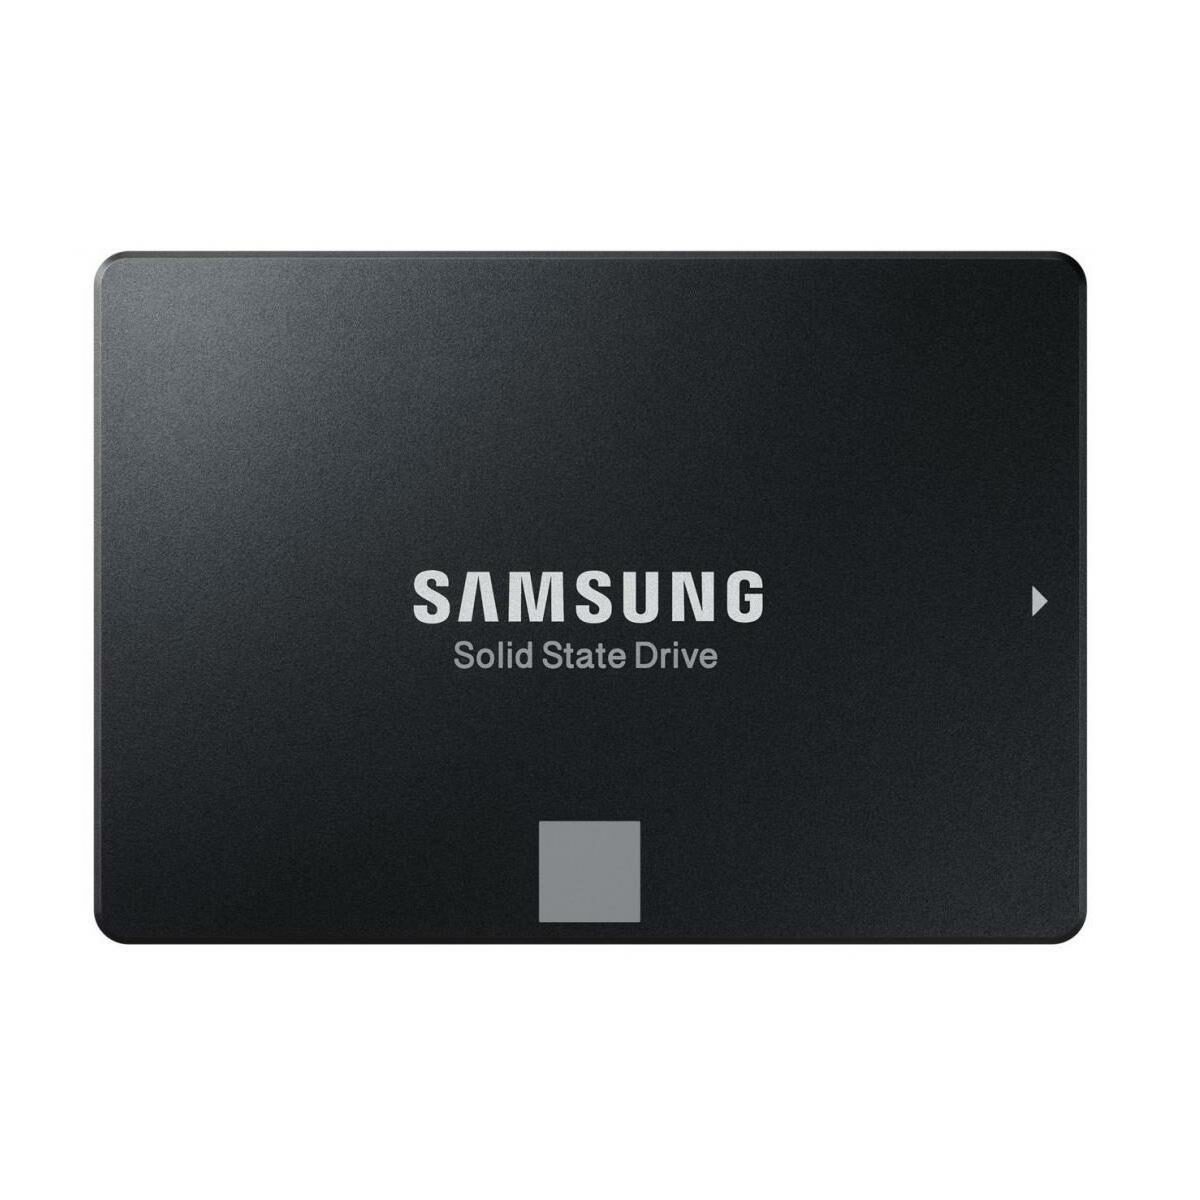 Samsung SSD 860 EVO SATA 2.5